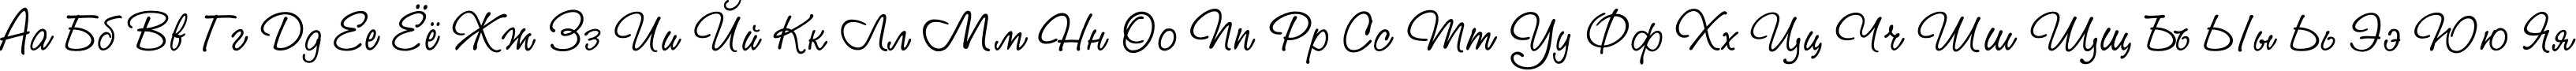 Пример написания русского алфавита шрифтом StudioScriptC